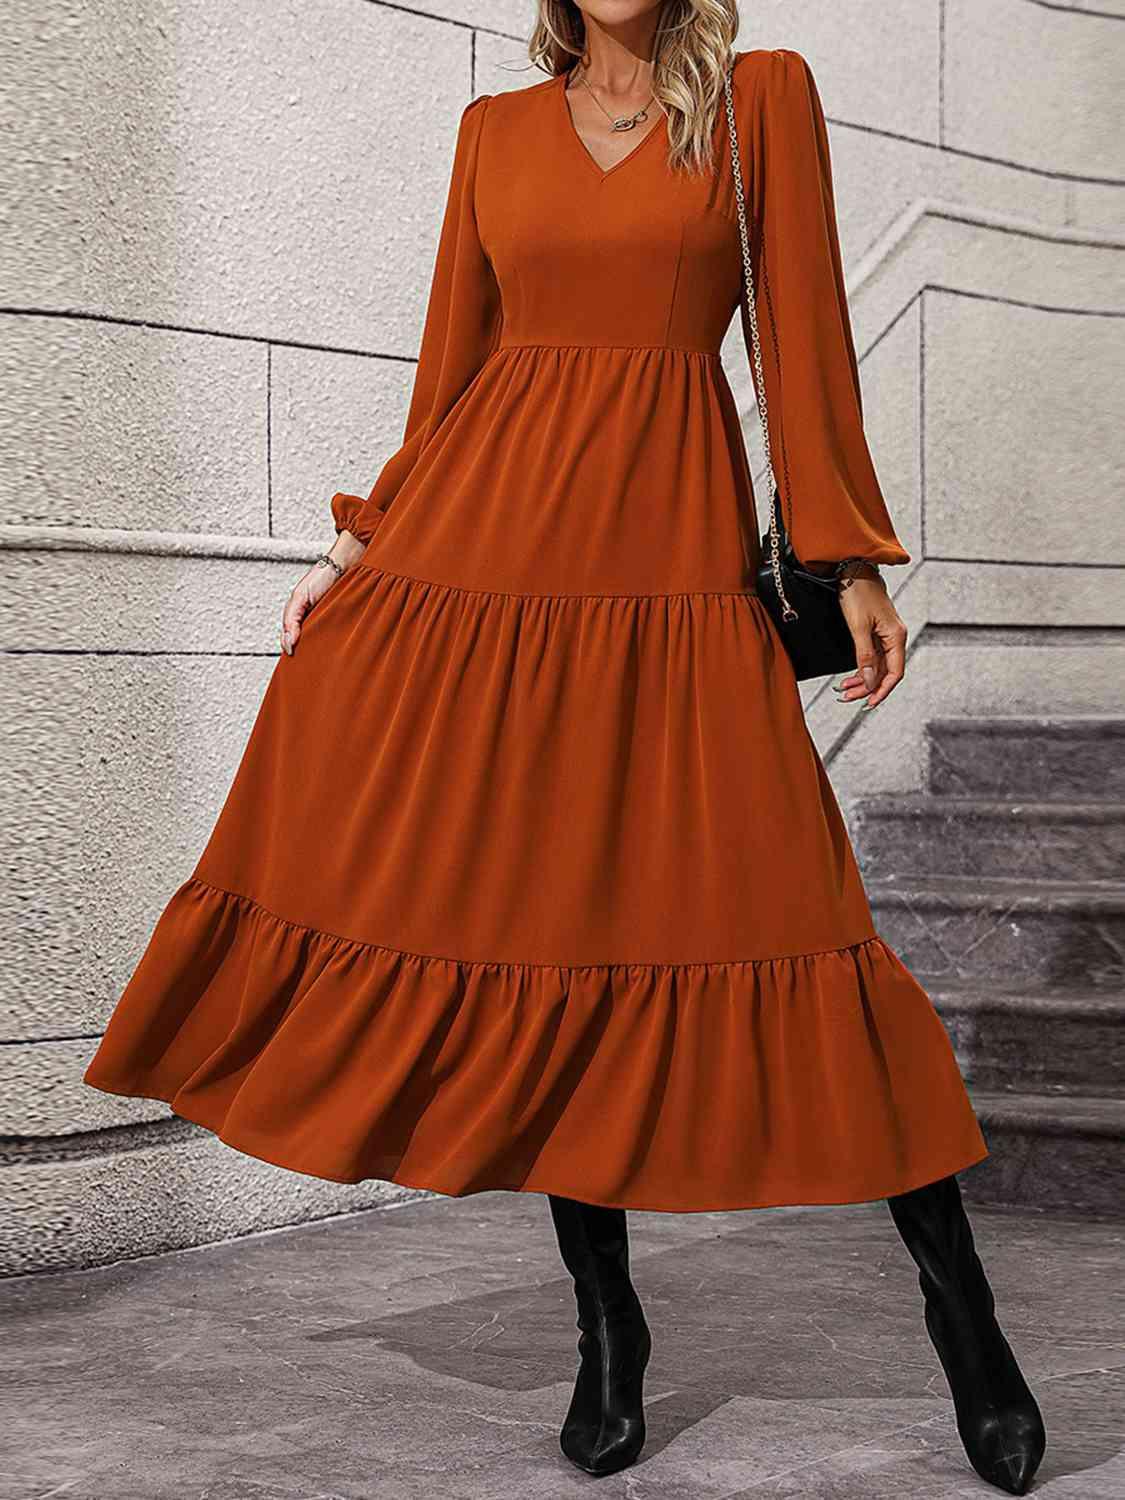 a woman in an orange dress